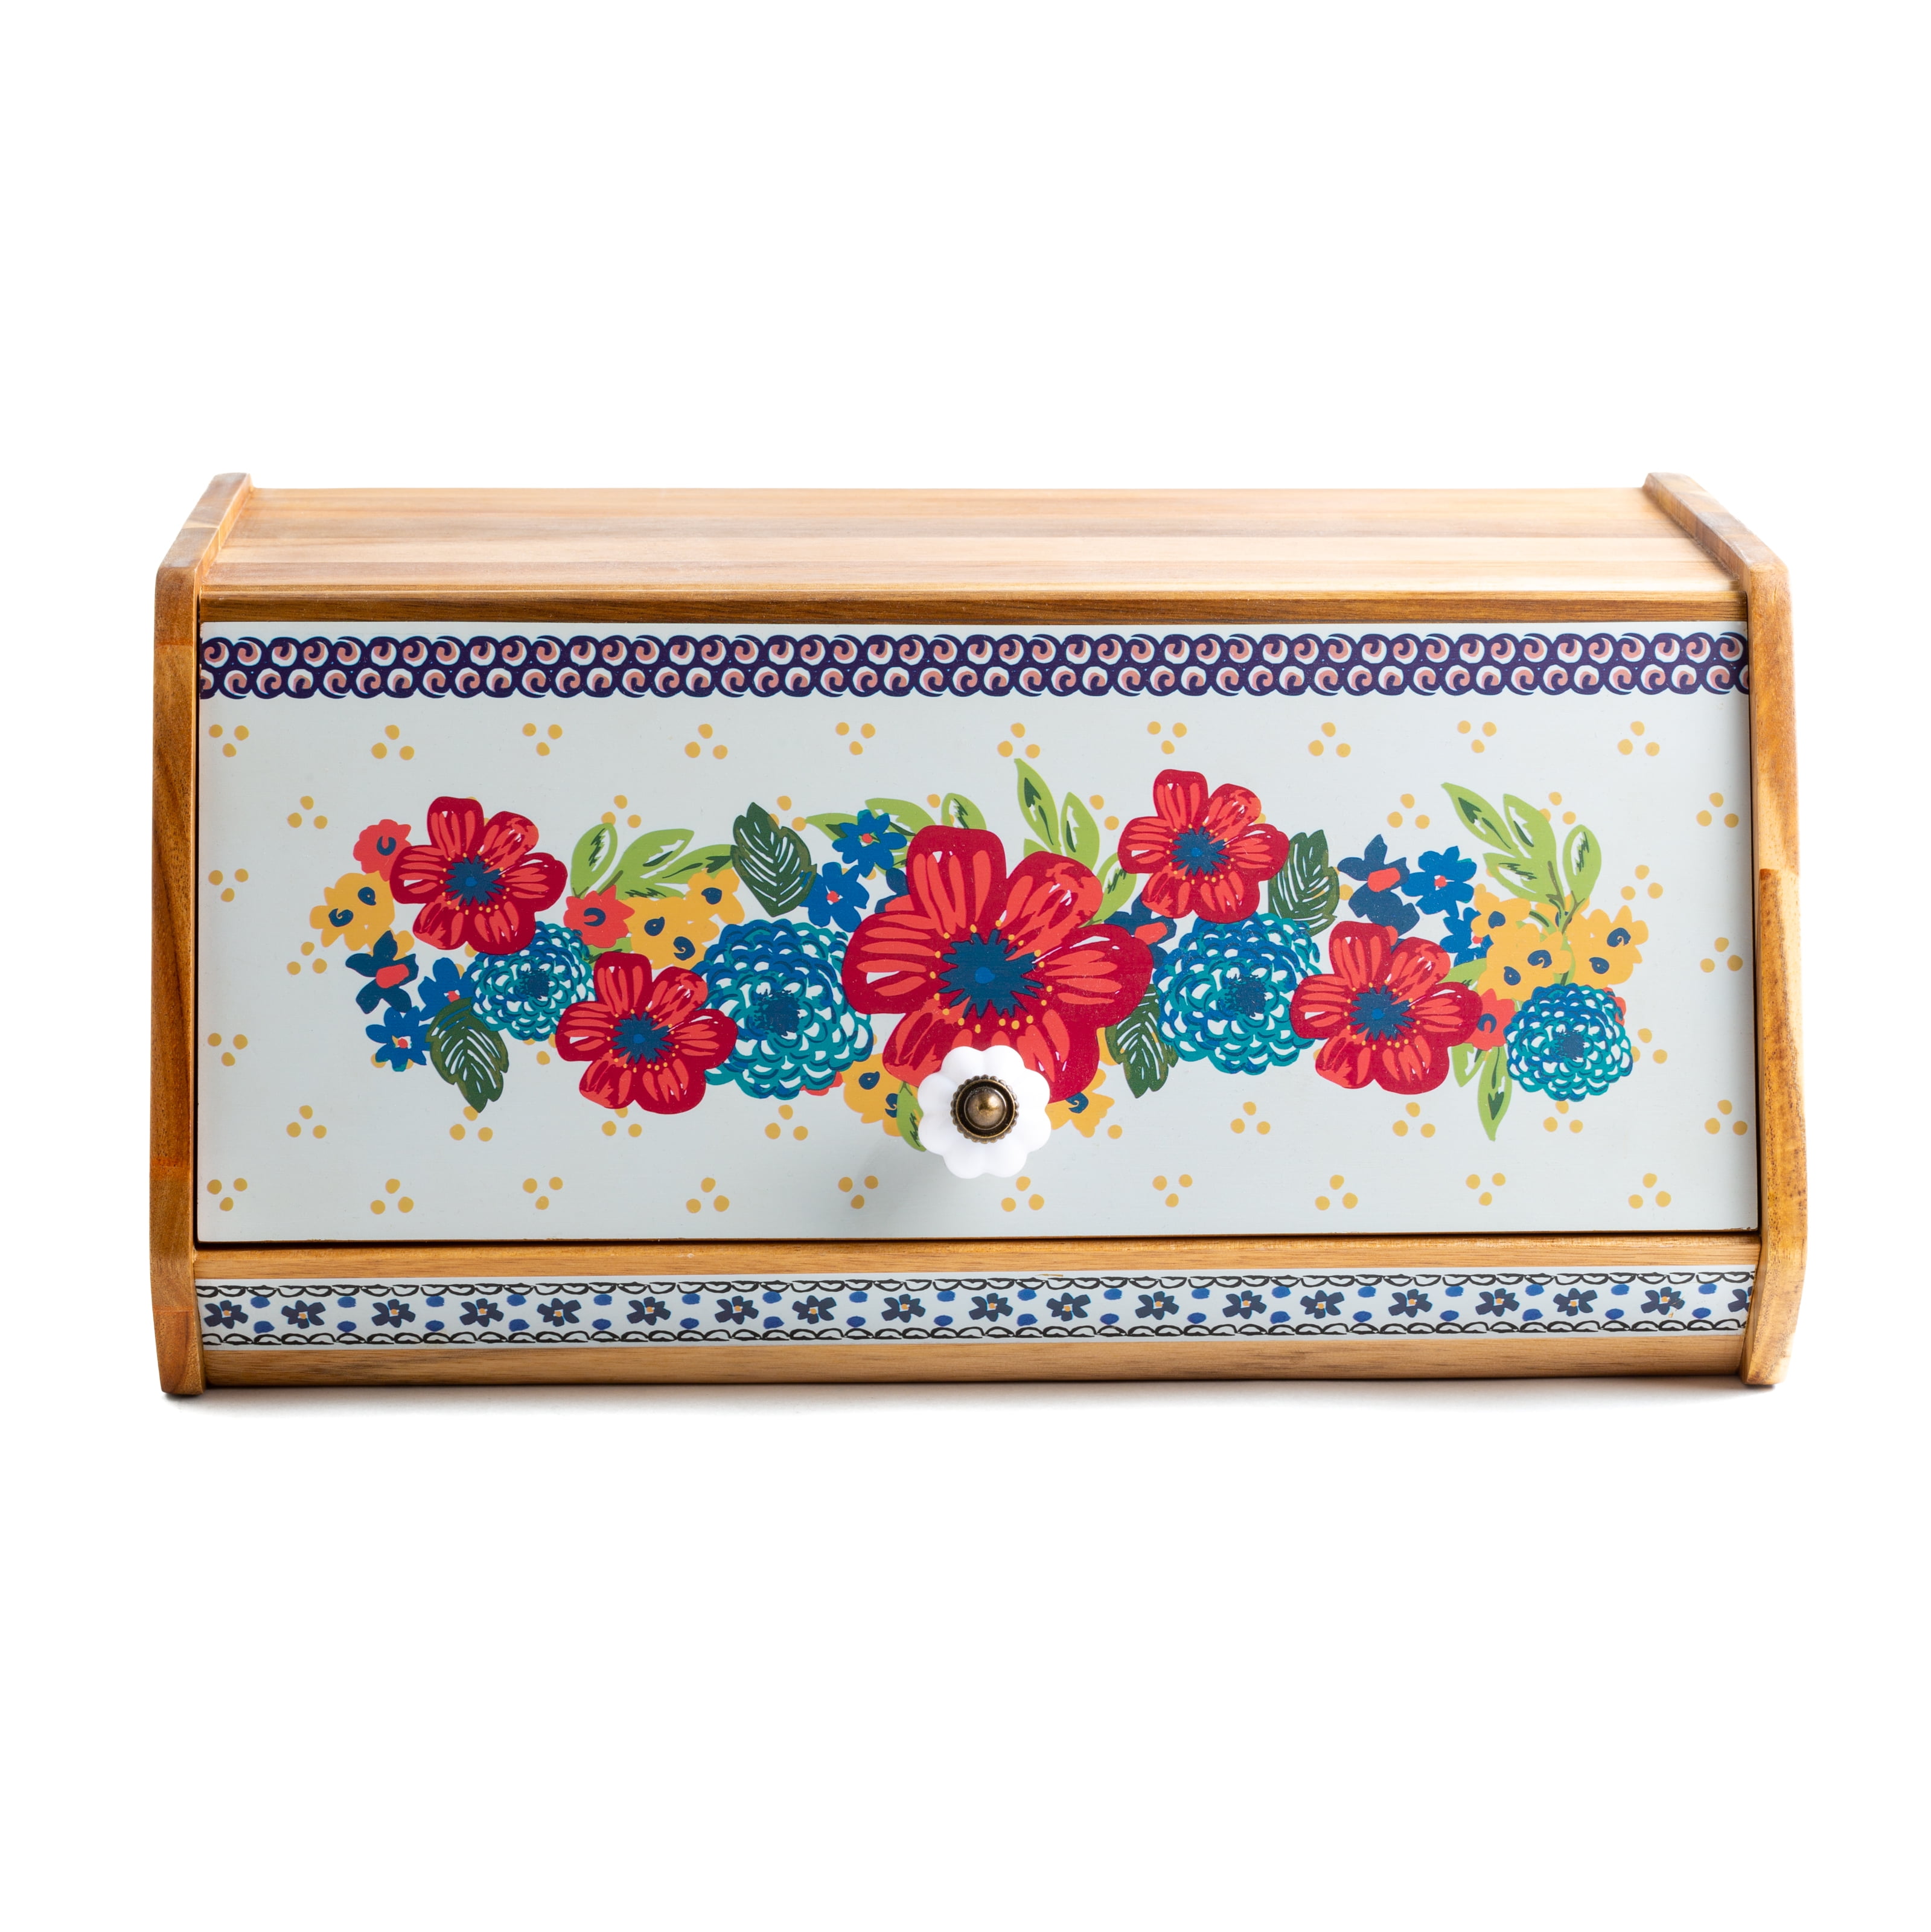 ✨ Pioneer Woman Bread Box Acacia Wood Dazzling Dahlia Fiona Vintage Floral New ✨